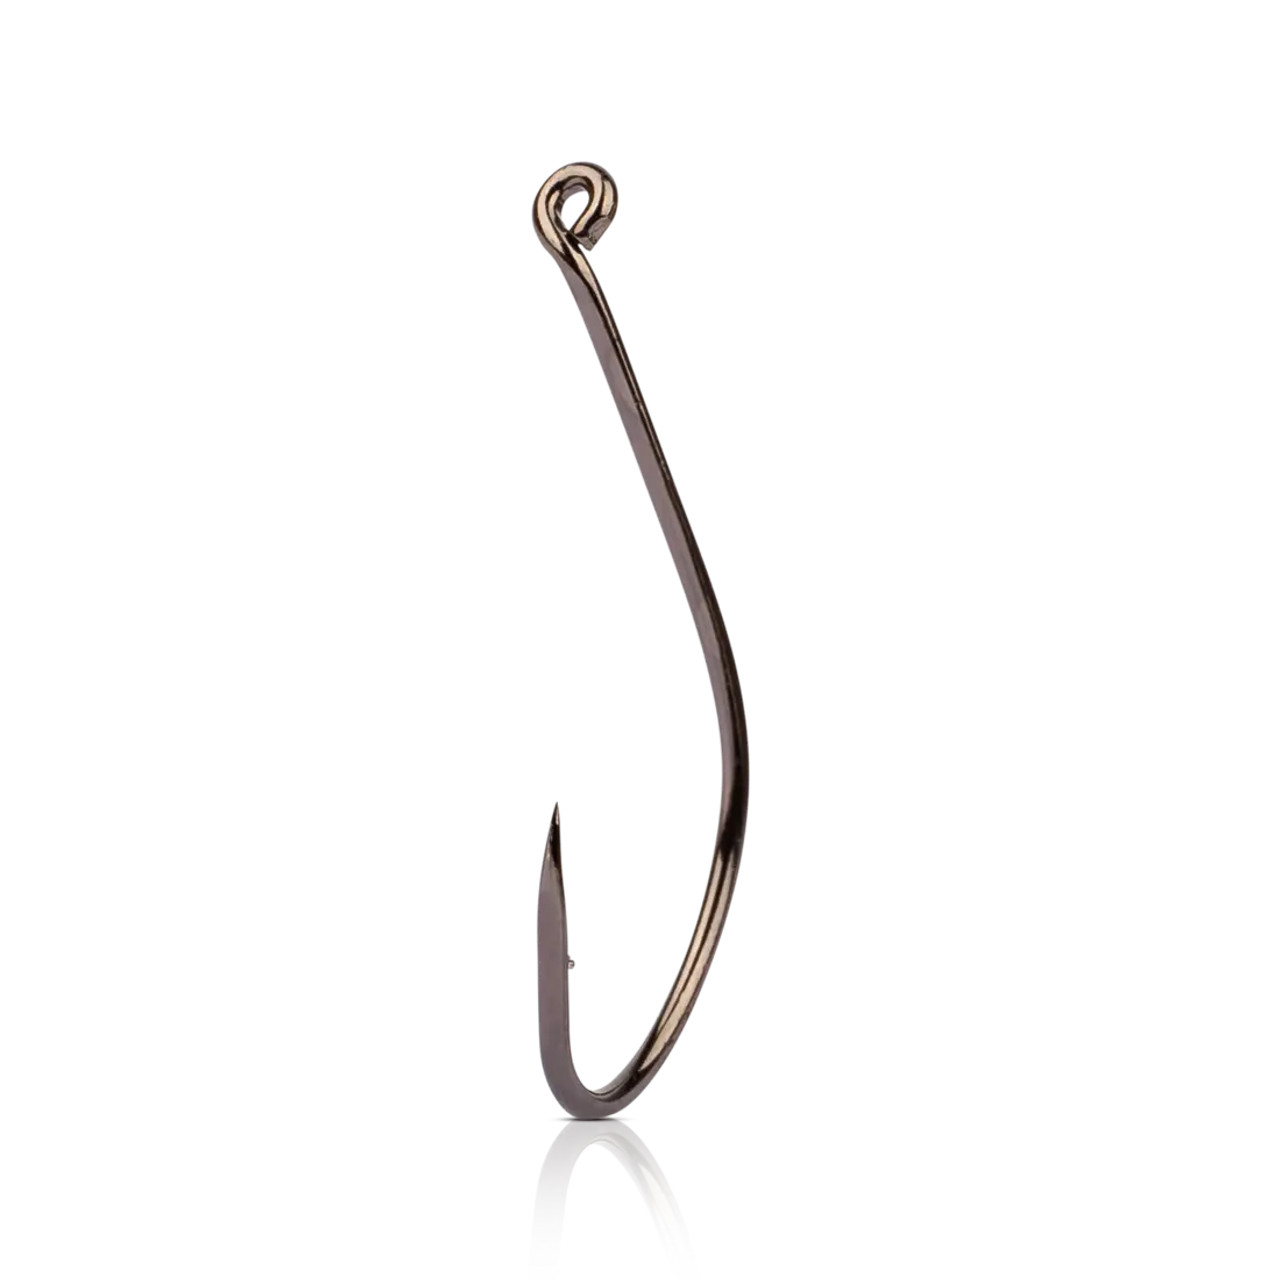 Mustad Wide Gap Hook Bronze 10ct Size 2